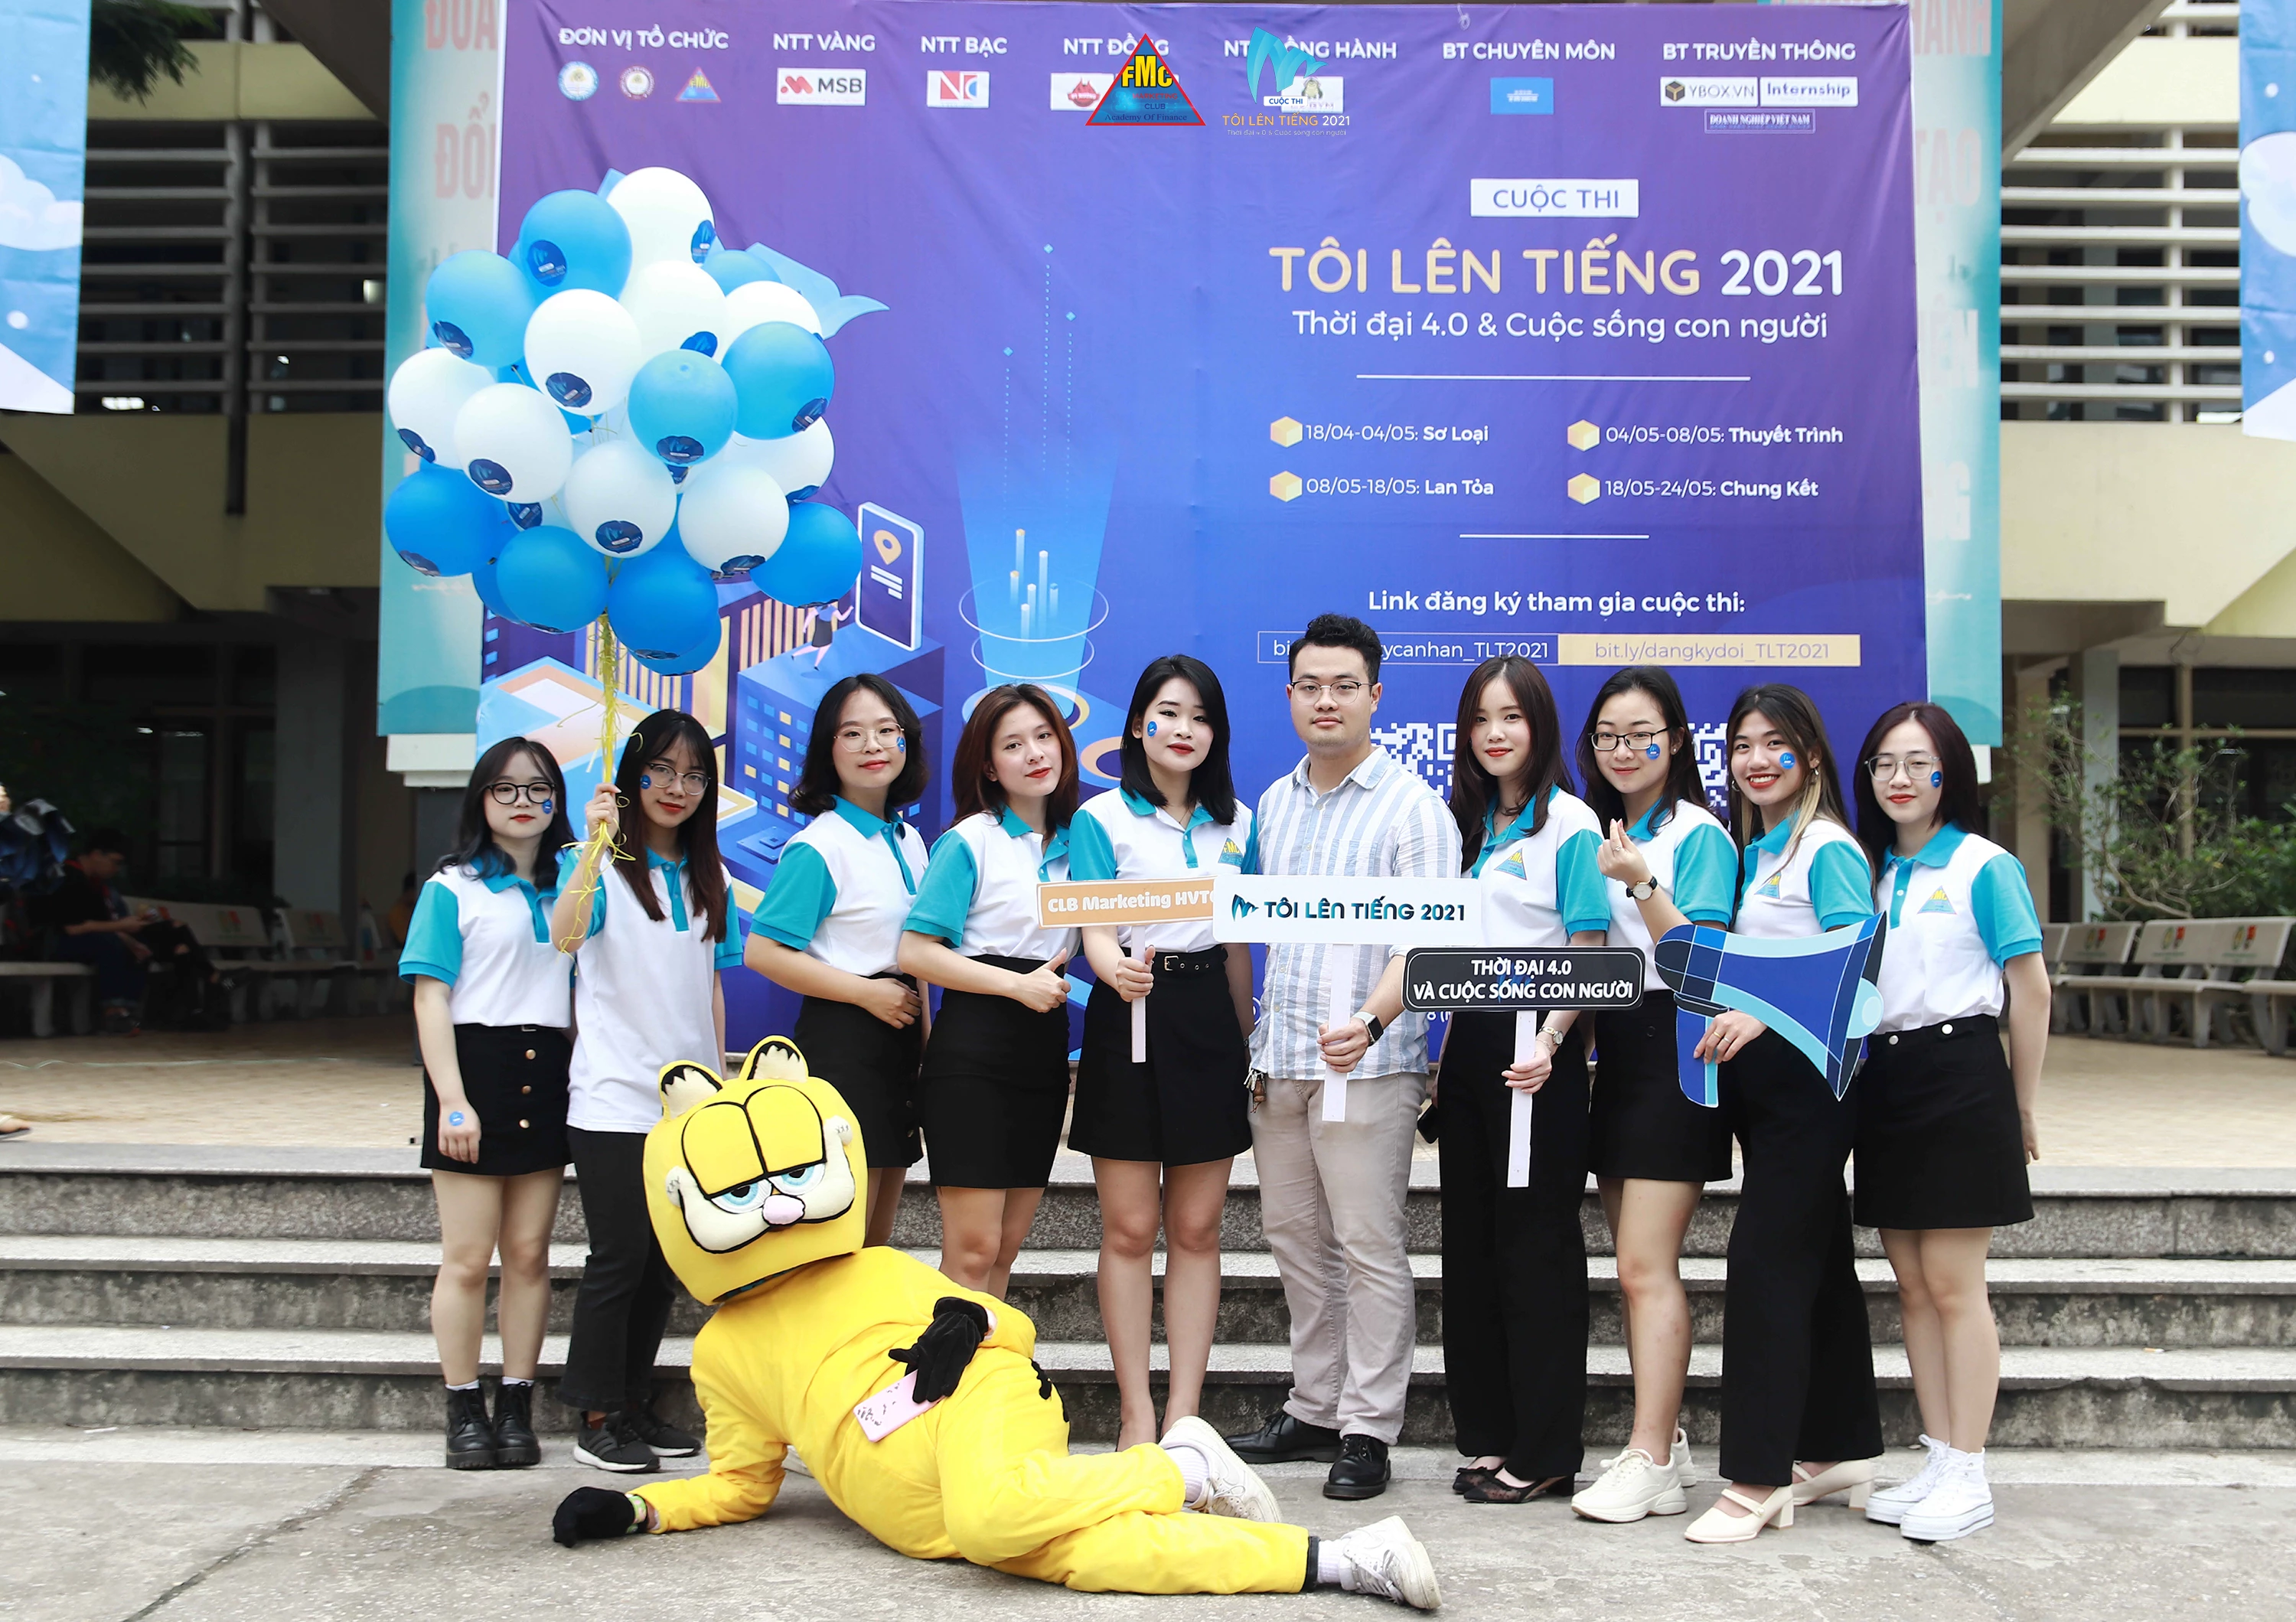 Anh Nguyễn Long Sơn - Founder & CEO Sonda Garden - Nhà tài trợ Đồng của cuộc thi.